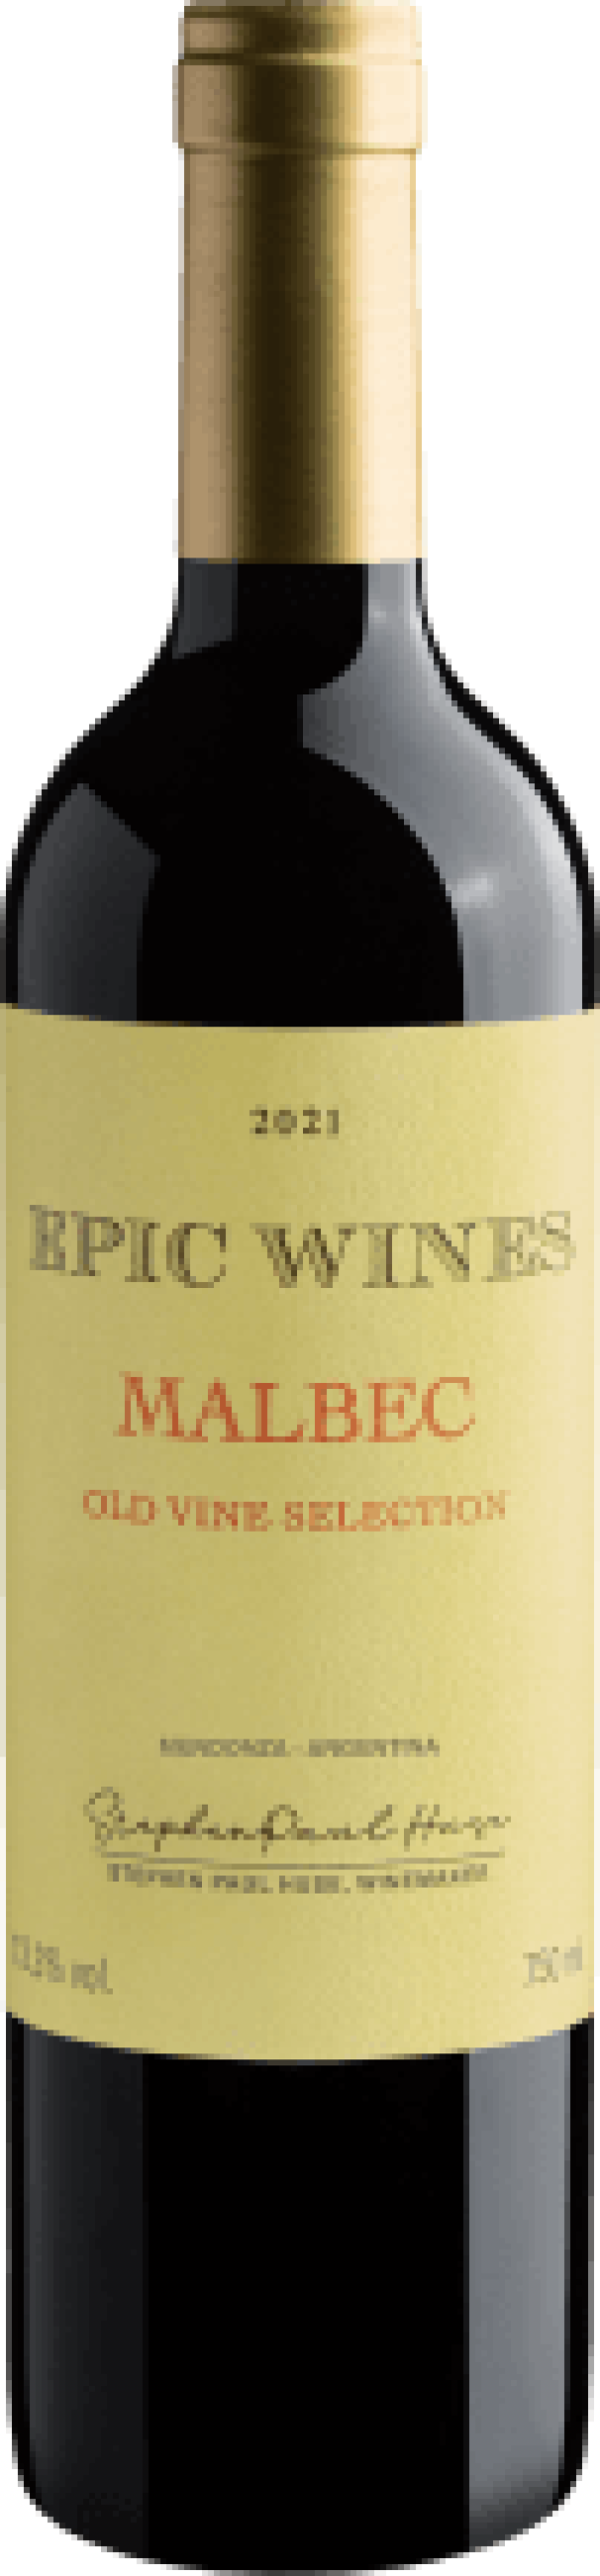 Belhara Estate Epic Wines Malbec Old Vine Selection 2021